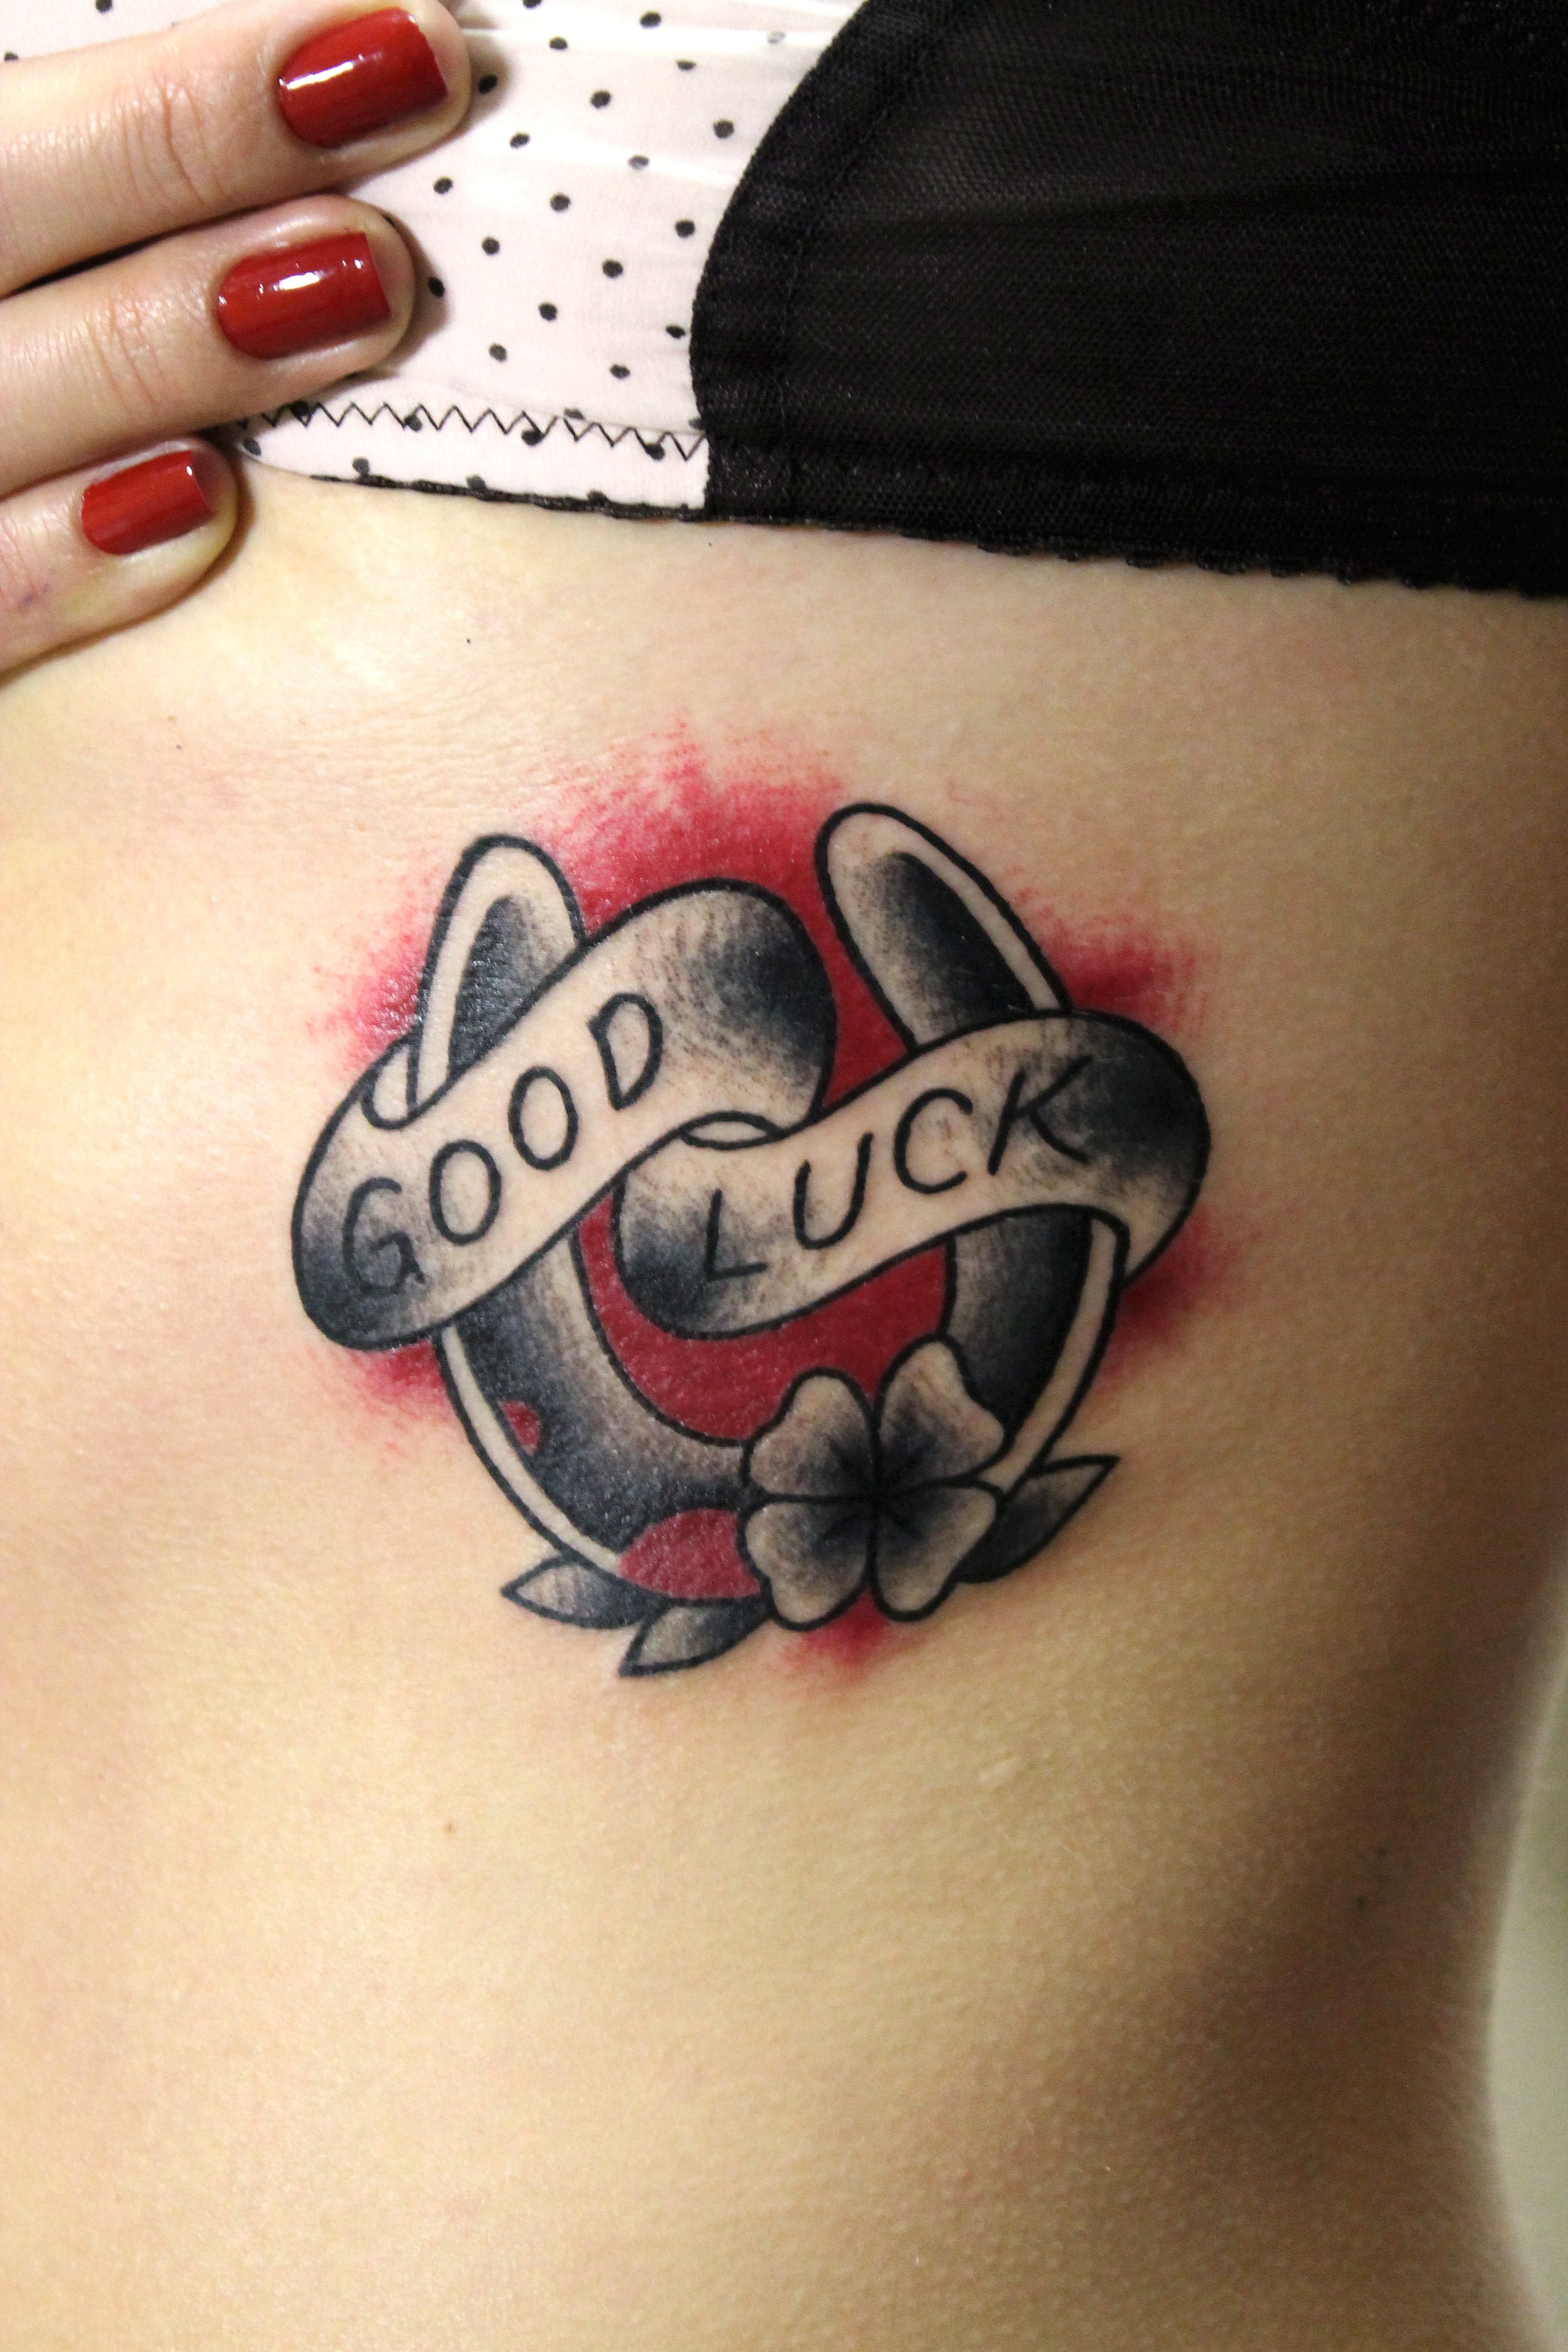 Художественная татуировка "Good Luck". Мастер Валера Моргунов.